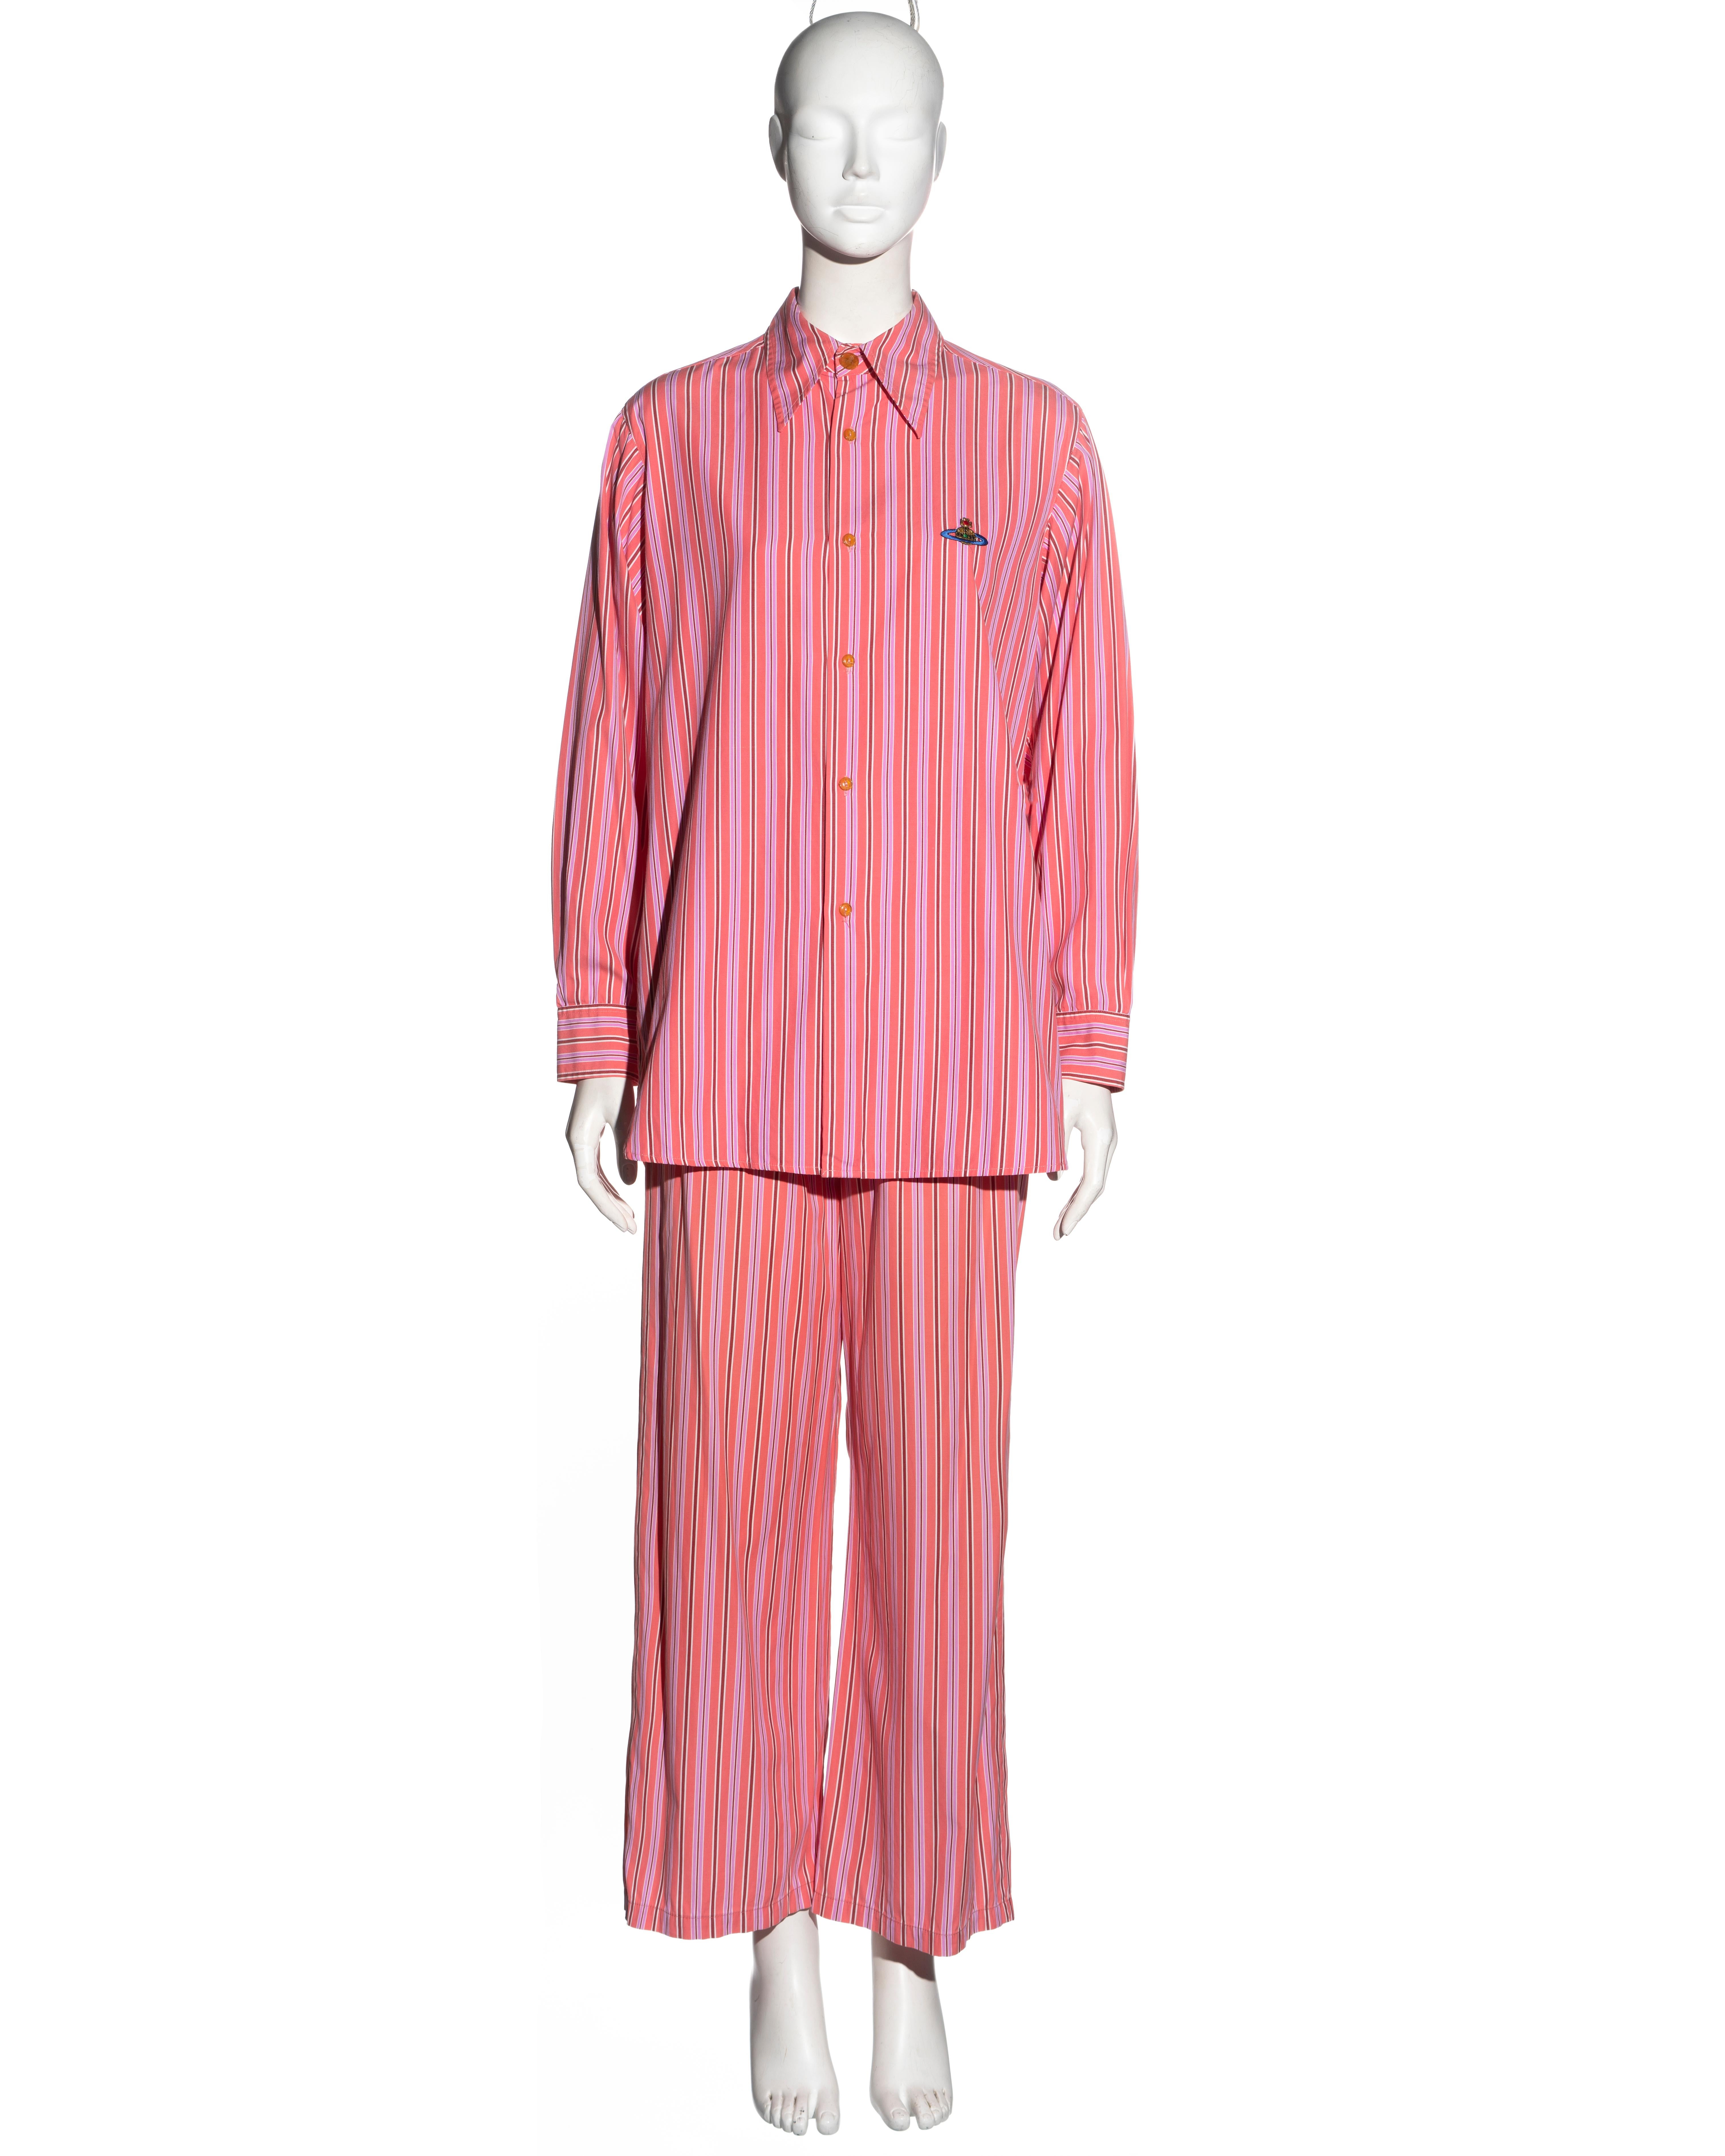 Vivienne Westwood pink striped cotton 3-piece suit, ss 1993 For Sale 1